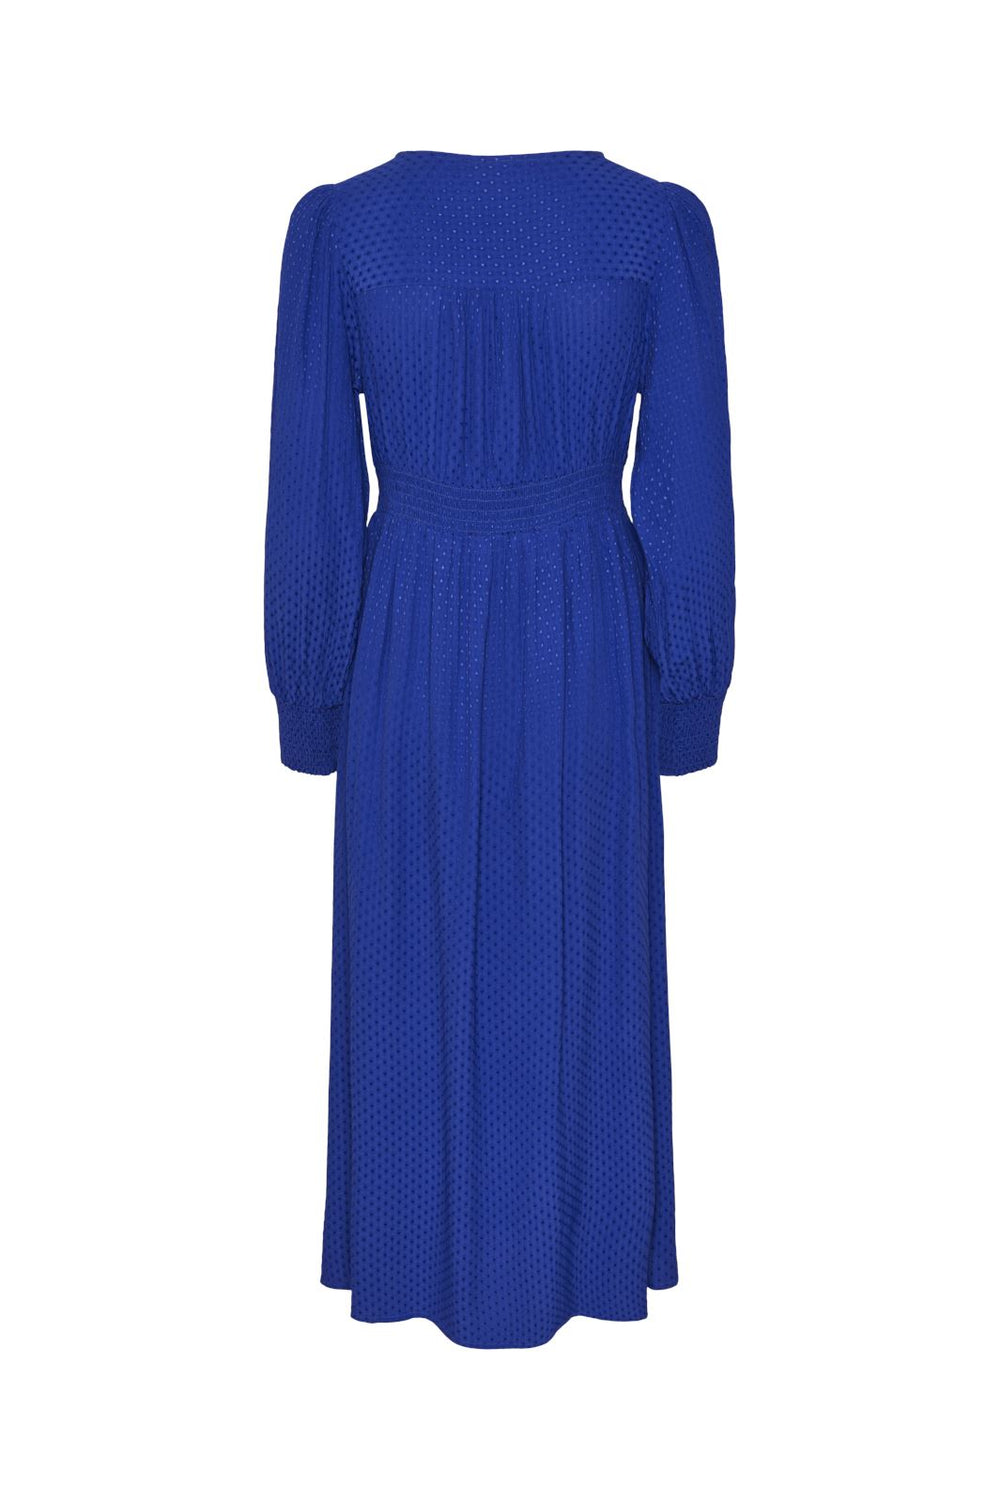 Y.A.S - Yasdrea Ls Long Dress - 4417152 Bluing